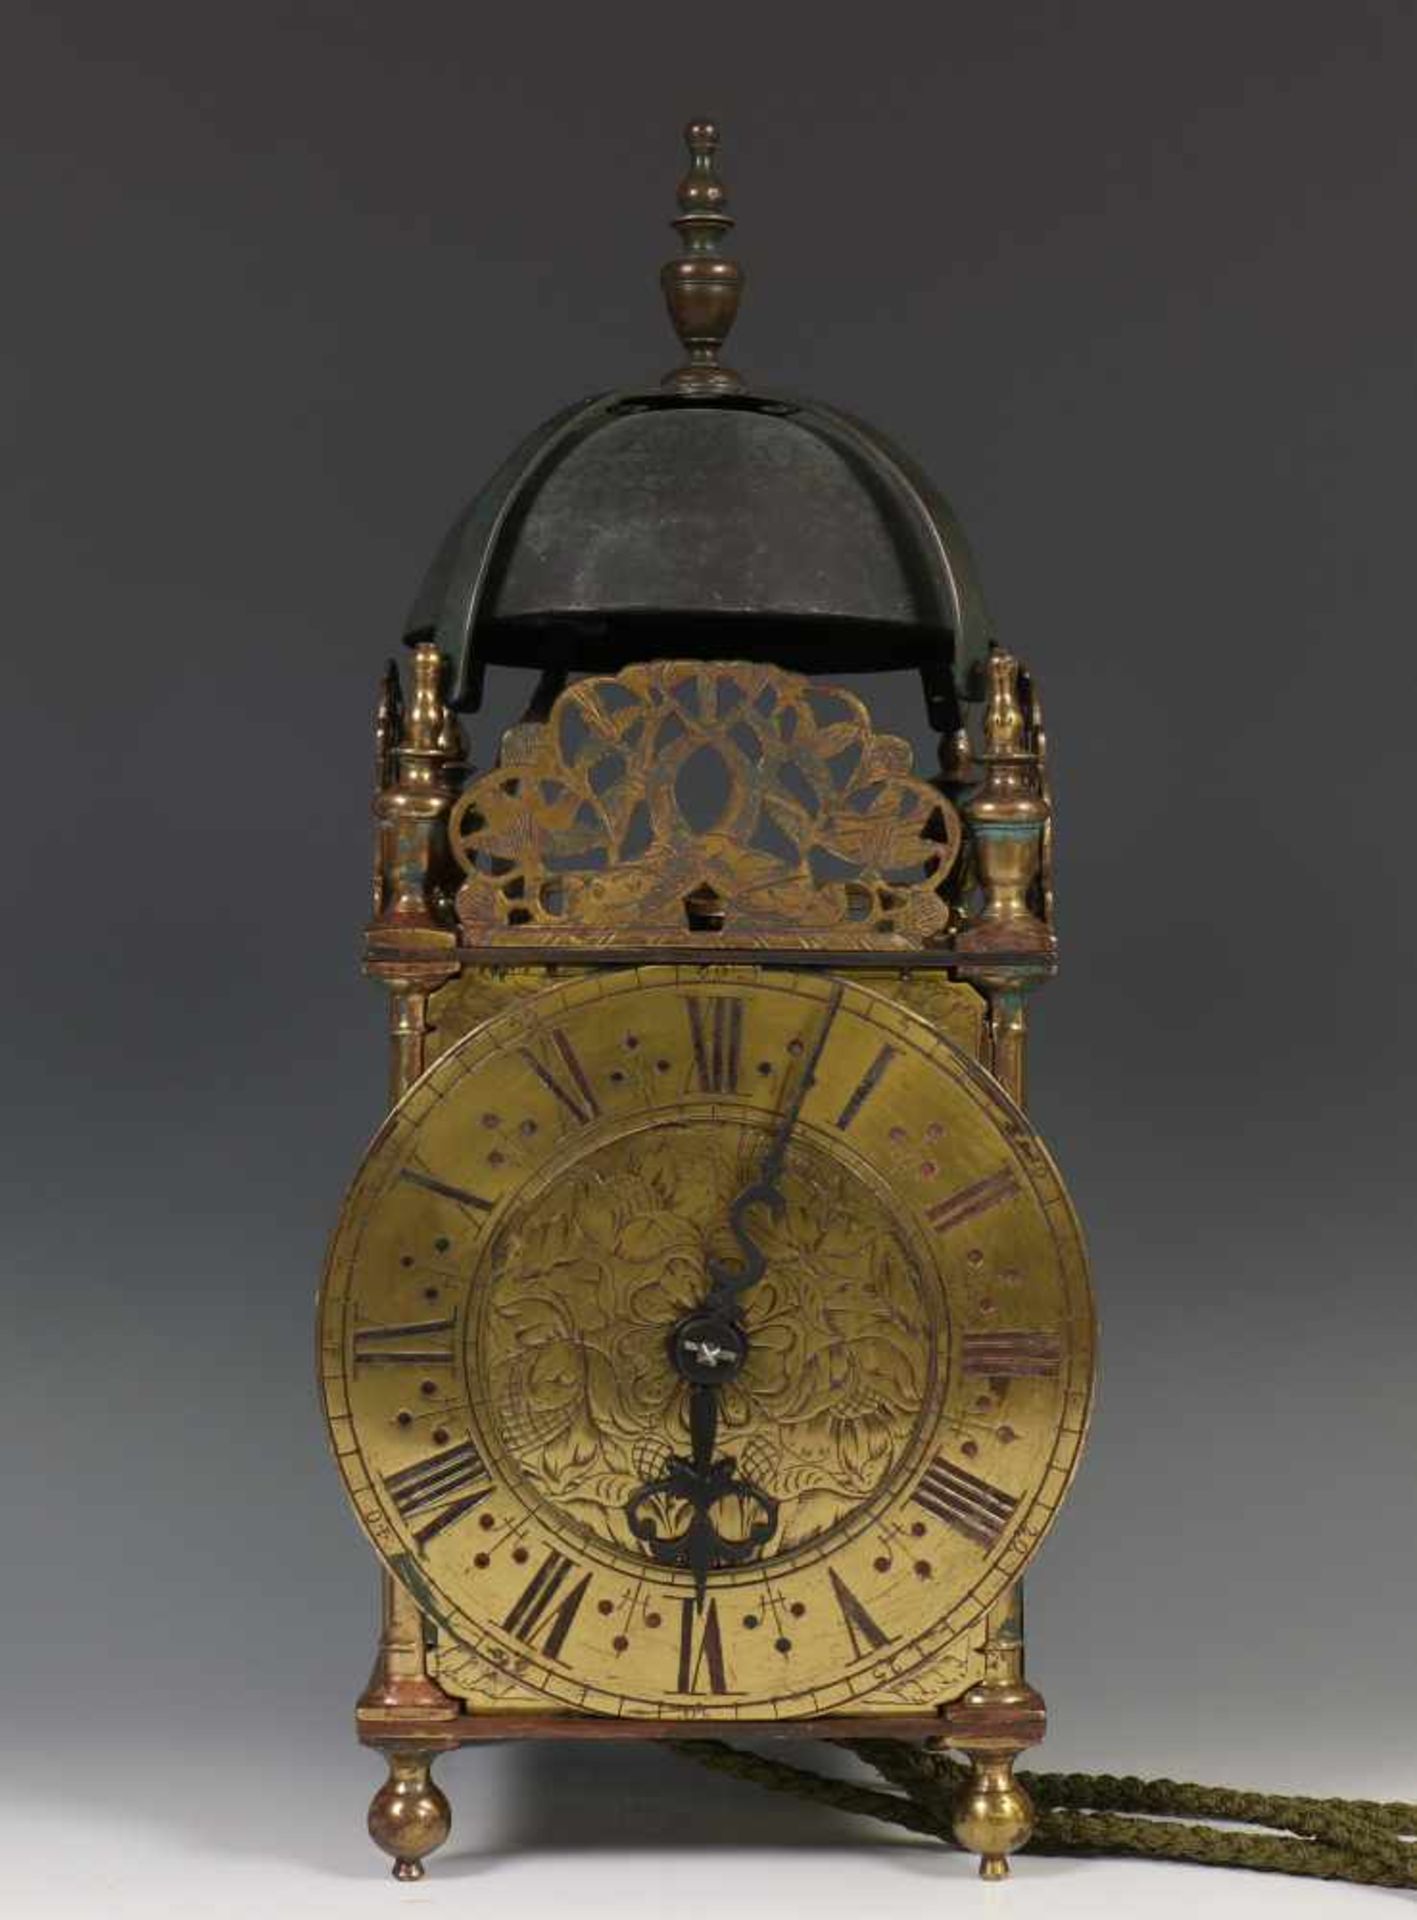 Engeland, lantaarnklok, James II periode,ca. 1685;30 urig uurwerk, messing kast. Fraai gegraveerde